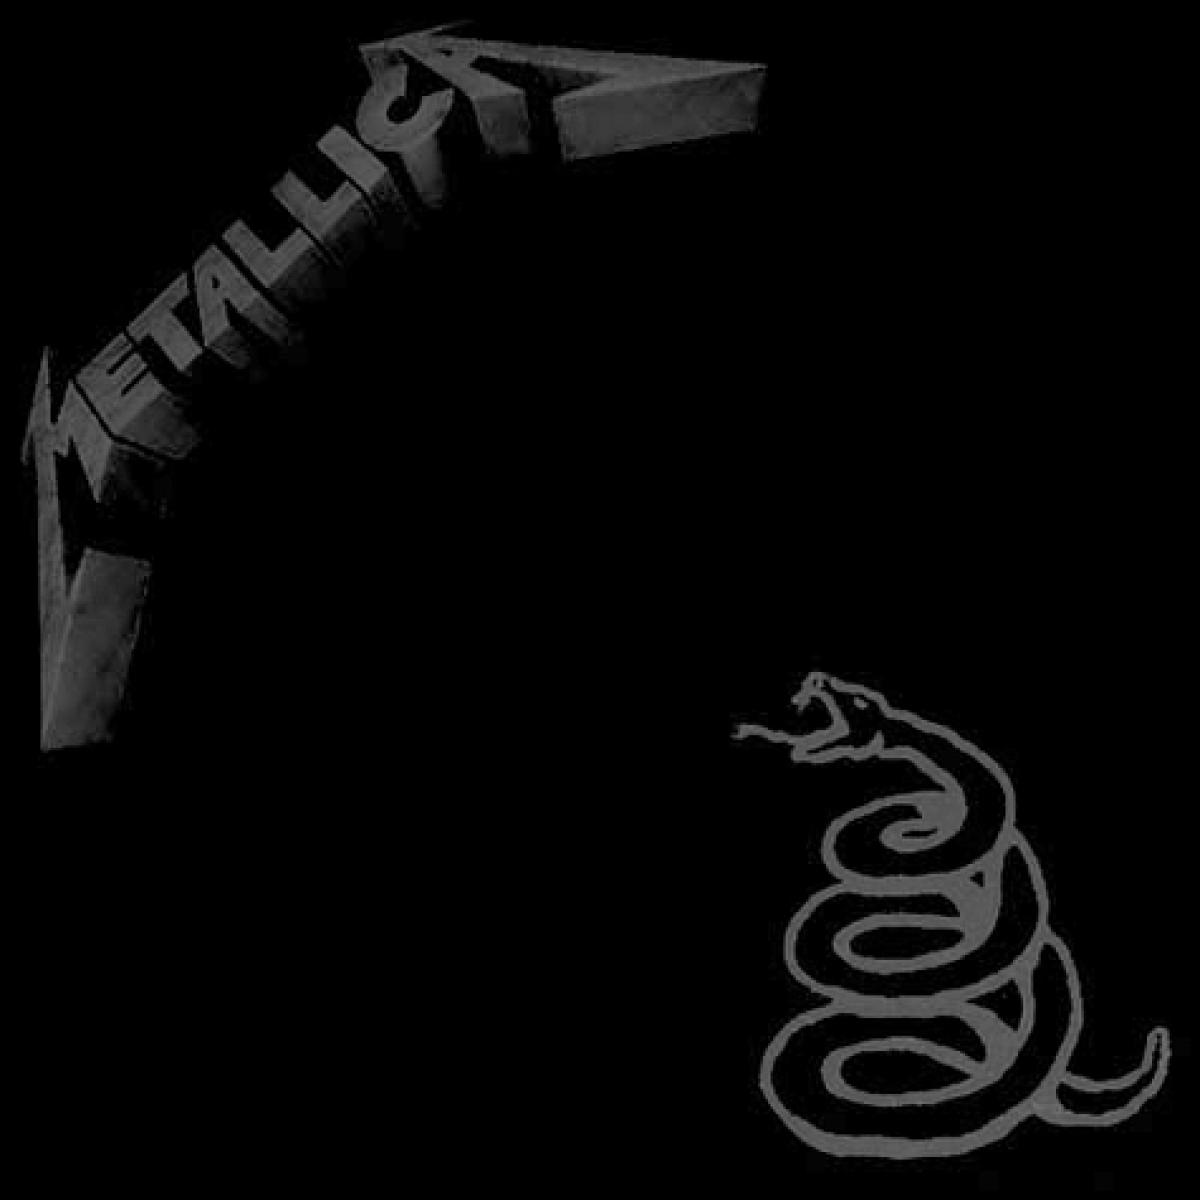 Metallica, ‘Metallica‘ avagy ‘Fekete Album‘ (1991) - 16 millió<br /><br />A Metallica jókor adta ki ezt az albumot. A Justice után meredeken egyszerűsítő csapat ezen albuma talán már előre jelezte, hogy mi lesz várható a későbbiekben, mégis egy csúcsrajáratott zenekar minden szempontból legsikeresebb albumáról van szó. Talán az utolsó igazi klasszikus ‘tallica lemezről.